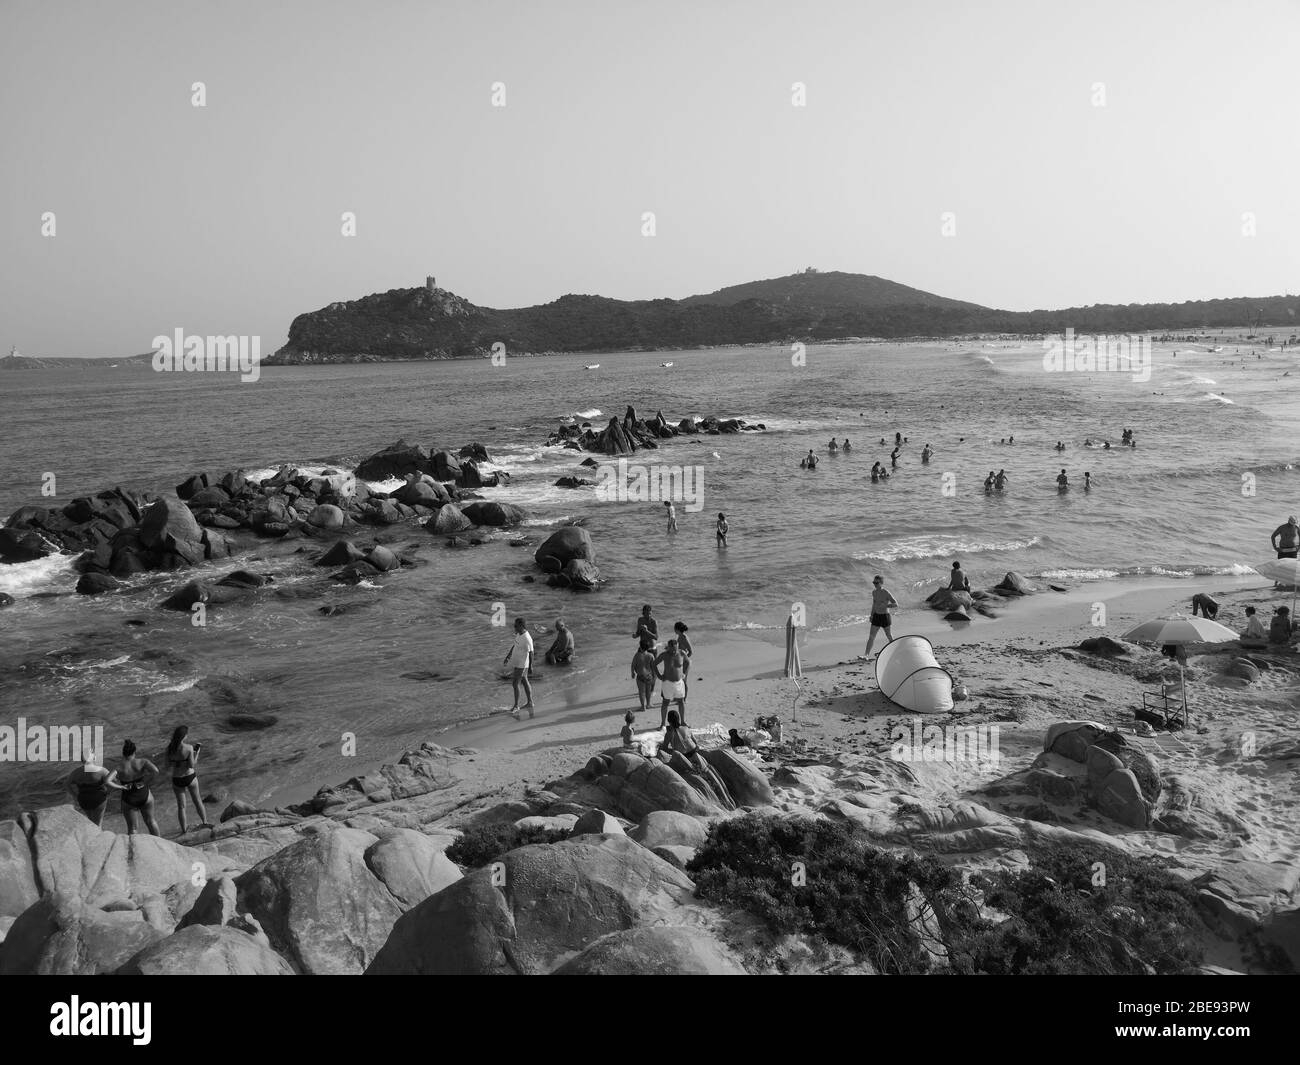 Sardegna, Italia - 7 agosto 2019: Turisti e bagnanti sulle spiagge di sabbia e roccia tipiche della Sardegna. Foto Stock